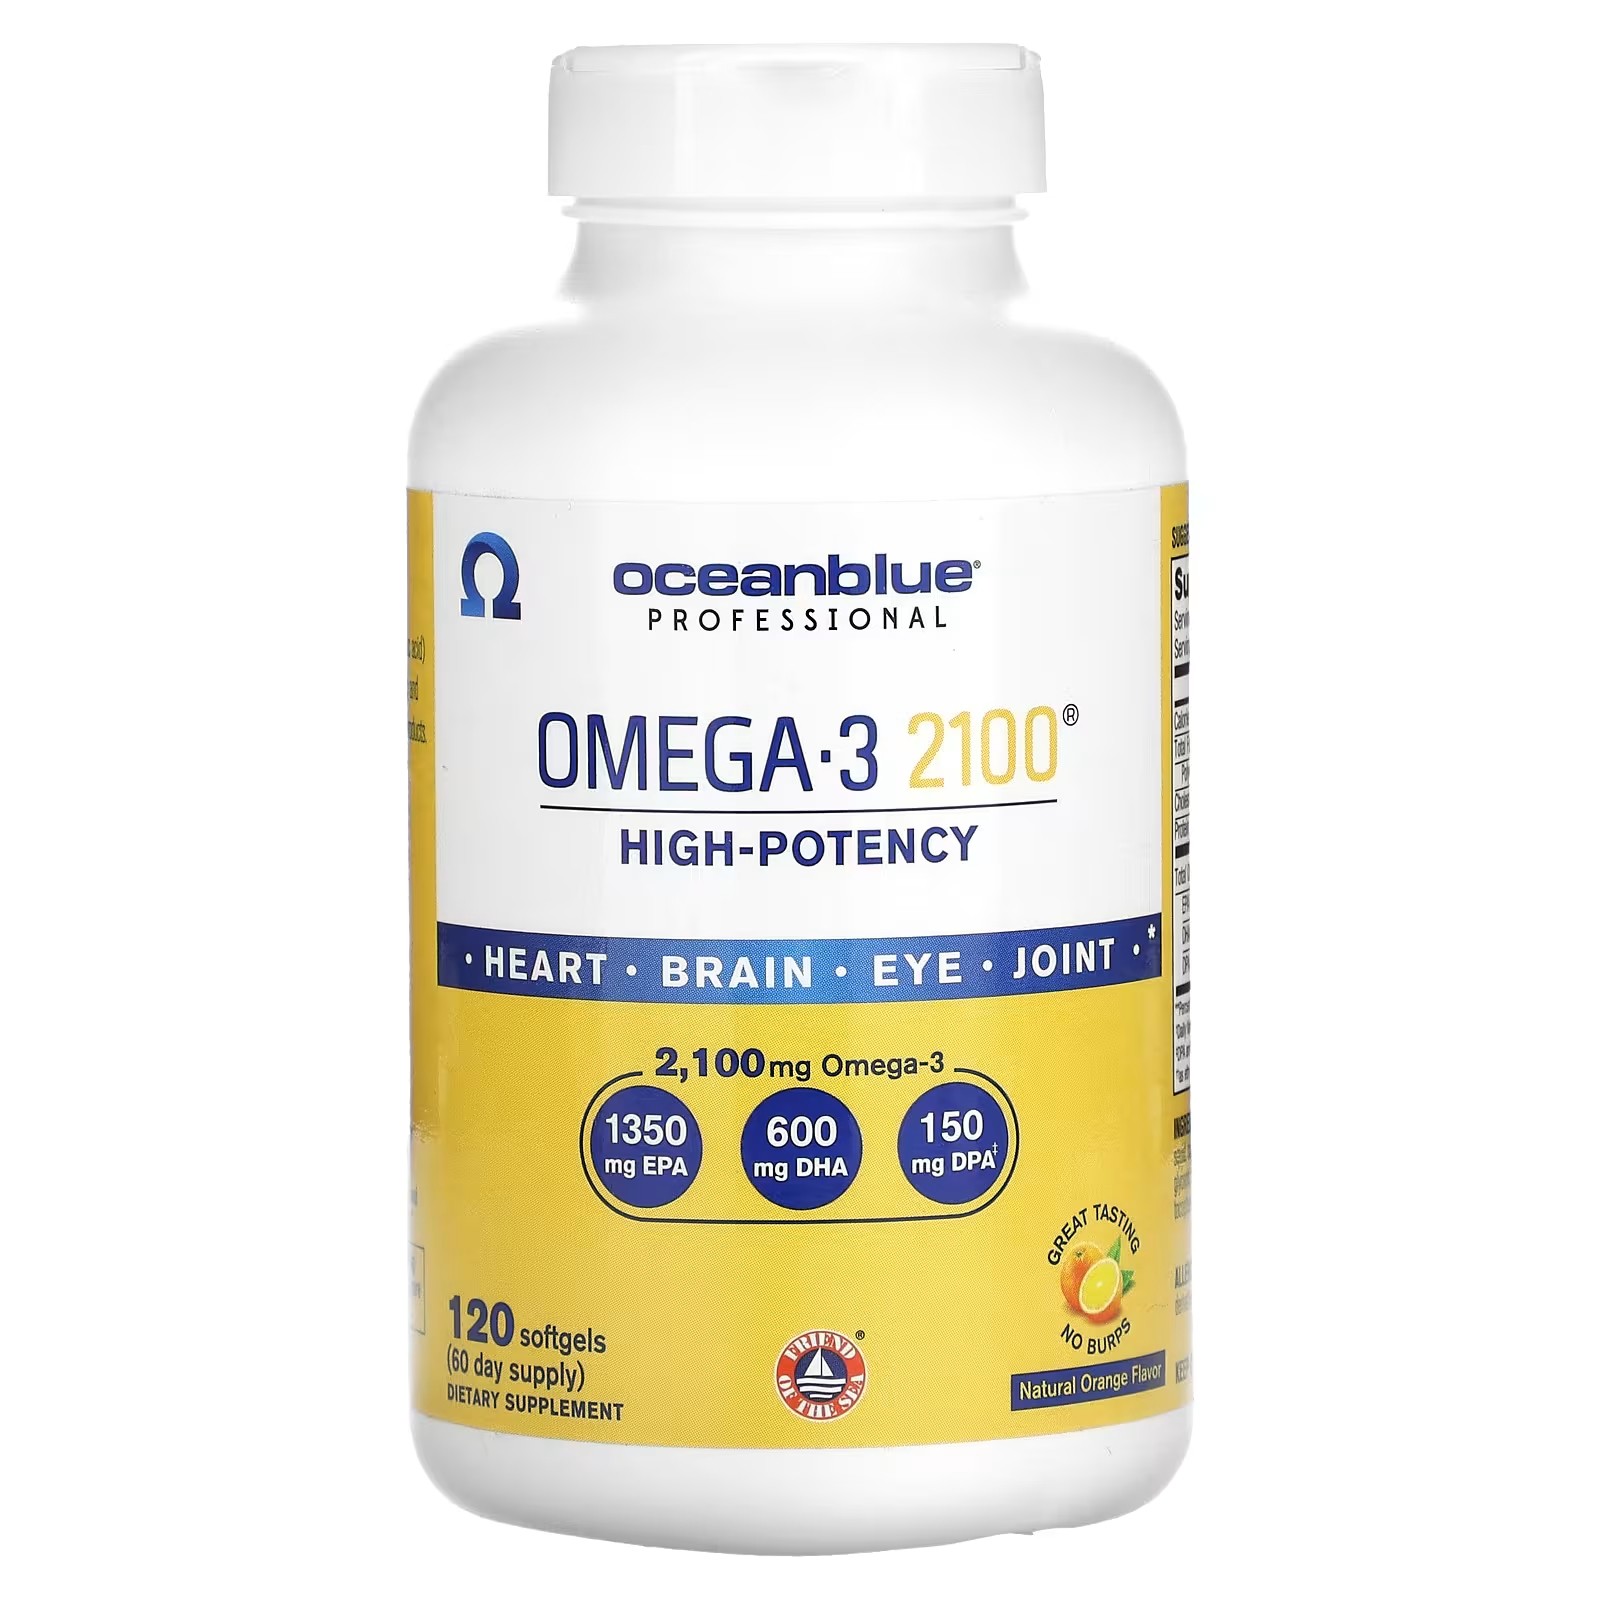 OceanBlue Professional Omega-3 2100, высокоэффективный натуральный апельсин, 2100 мг, 120 мягких таблеток